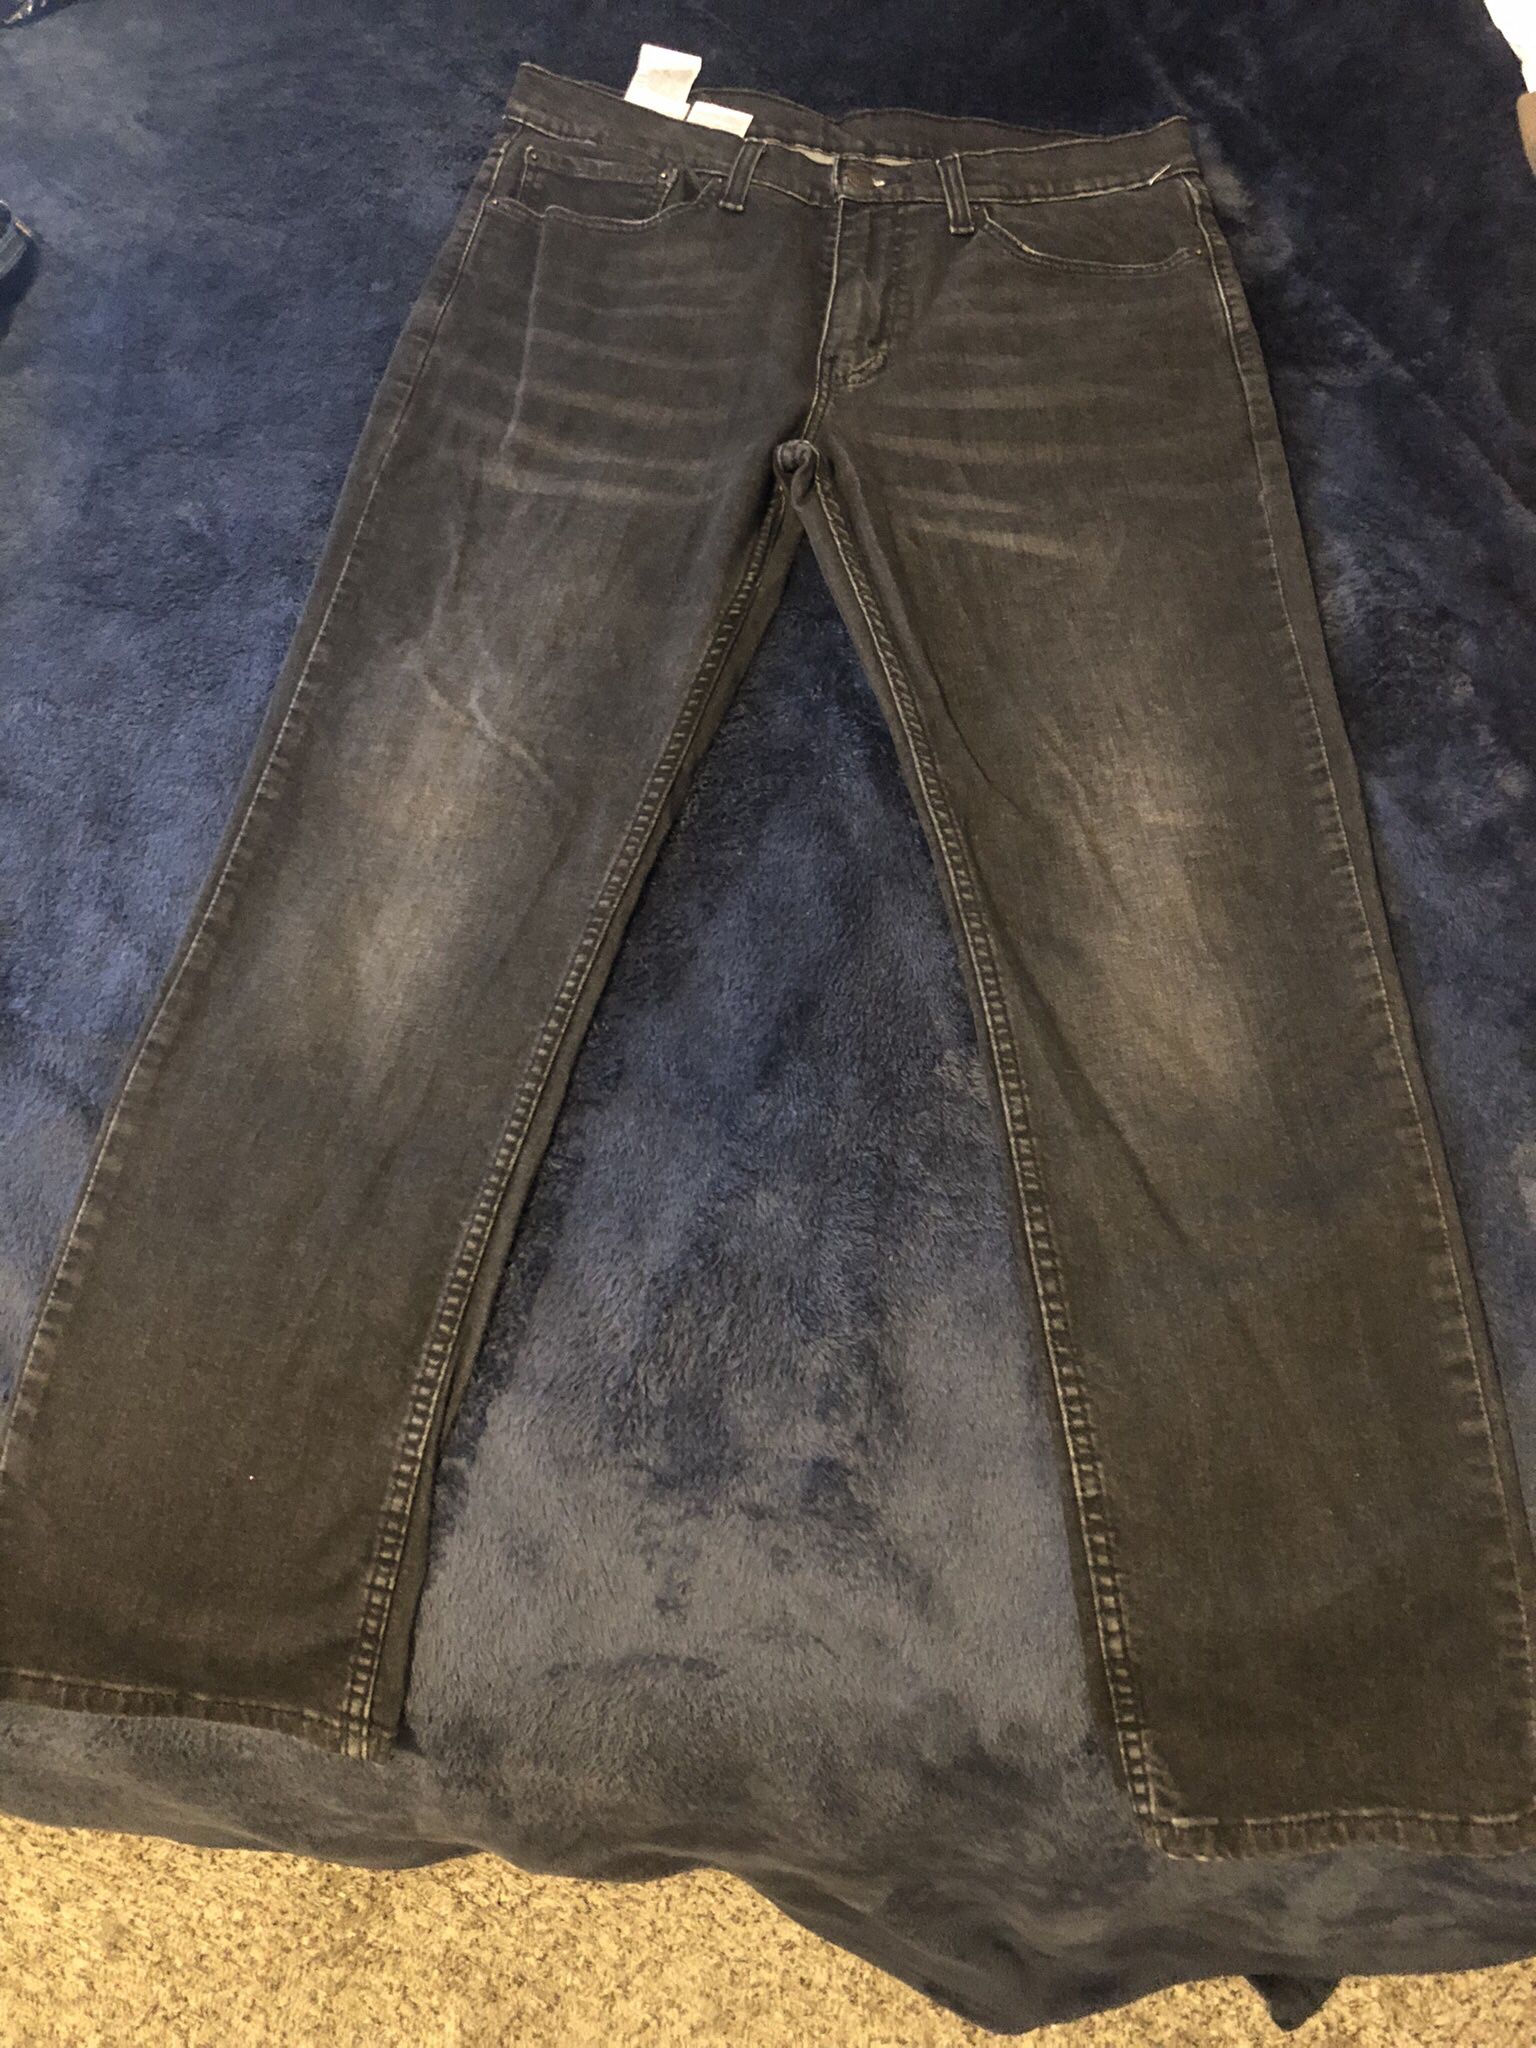 Levis 511 Black Denim Jeans Size 34